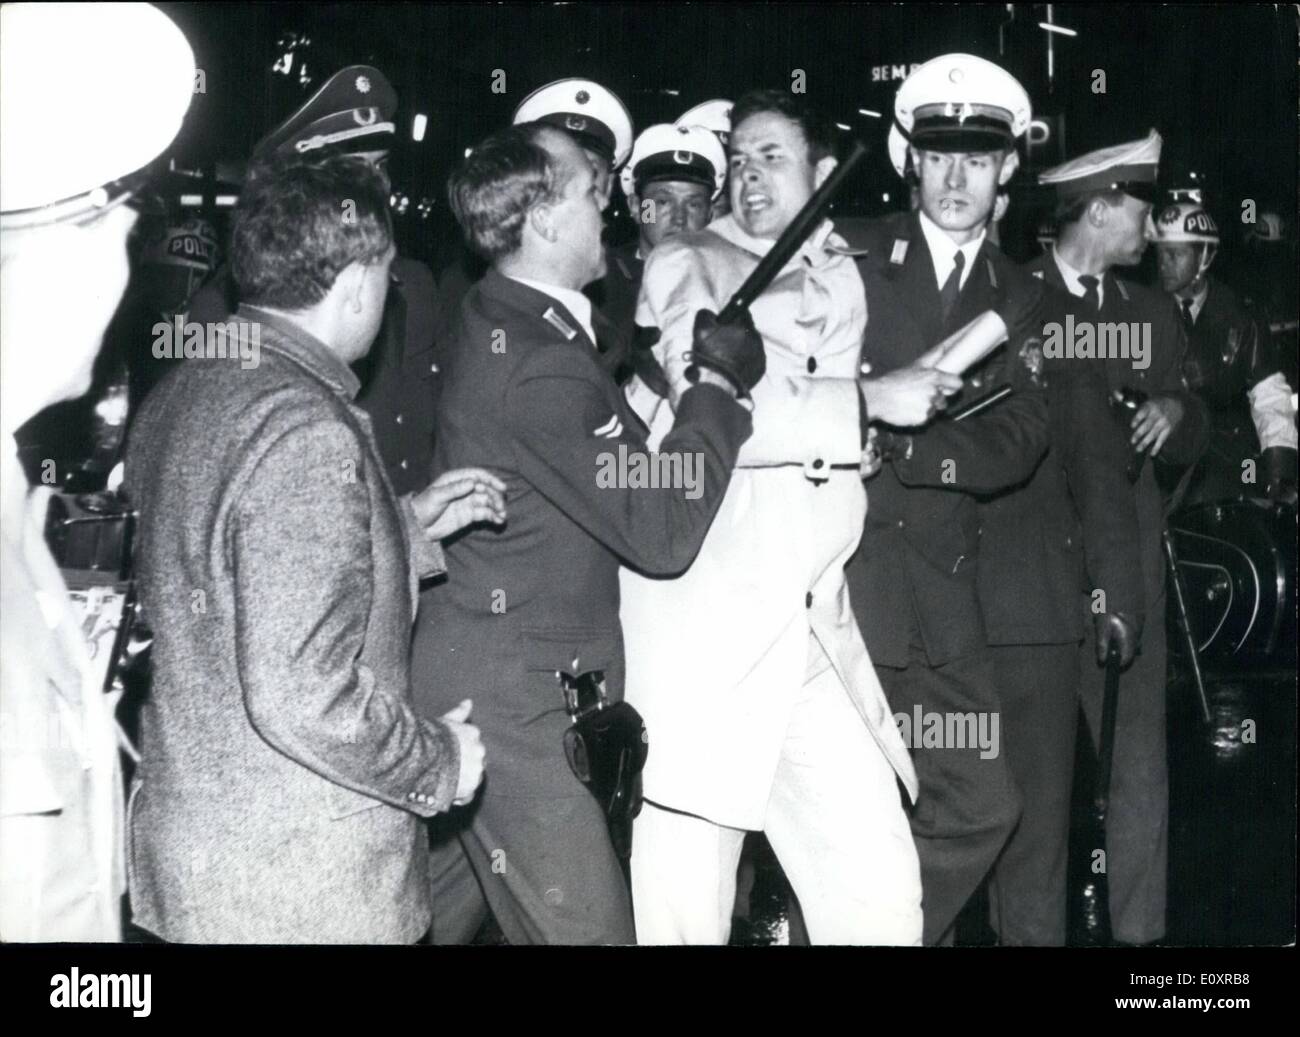 Ottobre 10, 1967 - Berlino Ovest: Wild manifestazioni studentesche contro American Vietnam politica - 4000 manifestanti, alcuni feriti, 20 Foto Stock